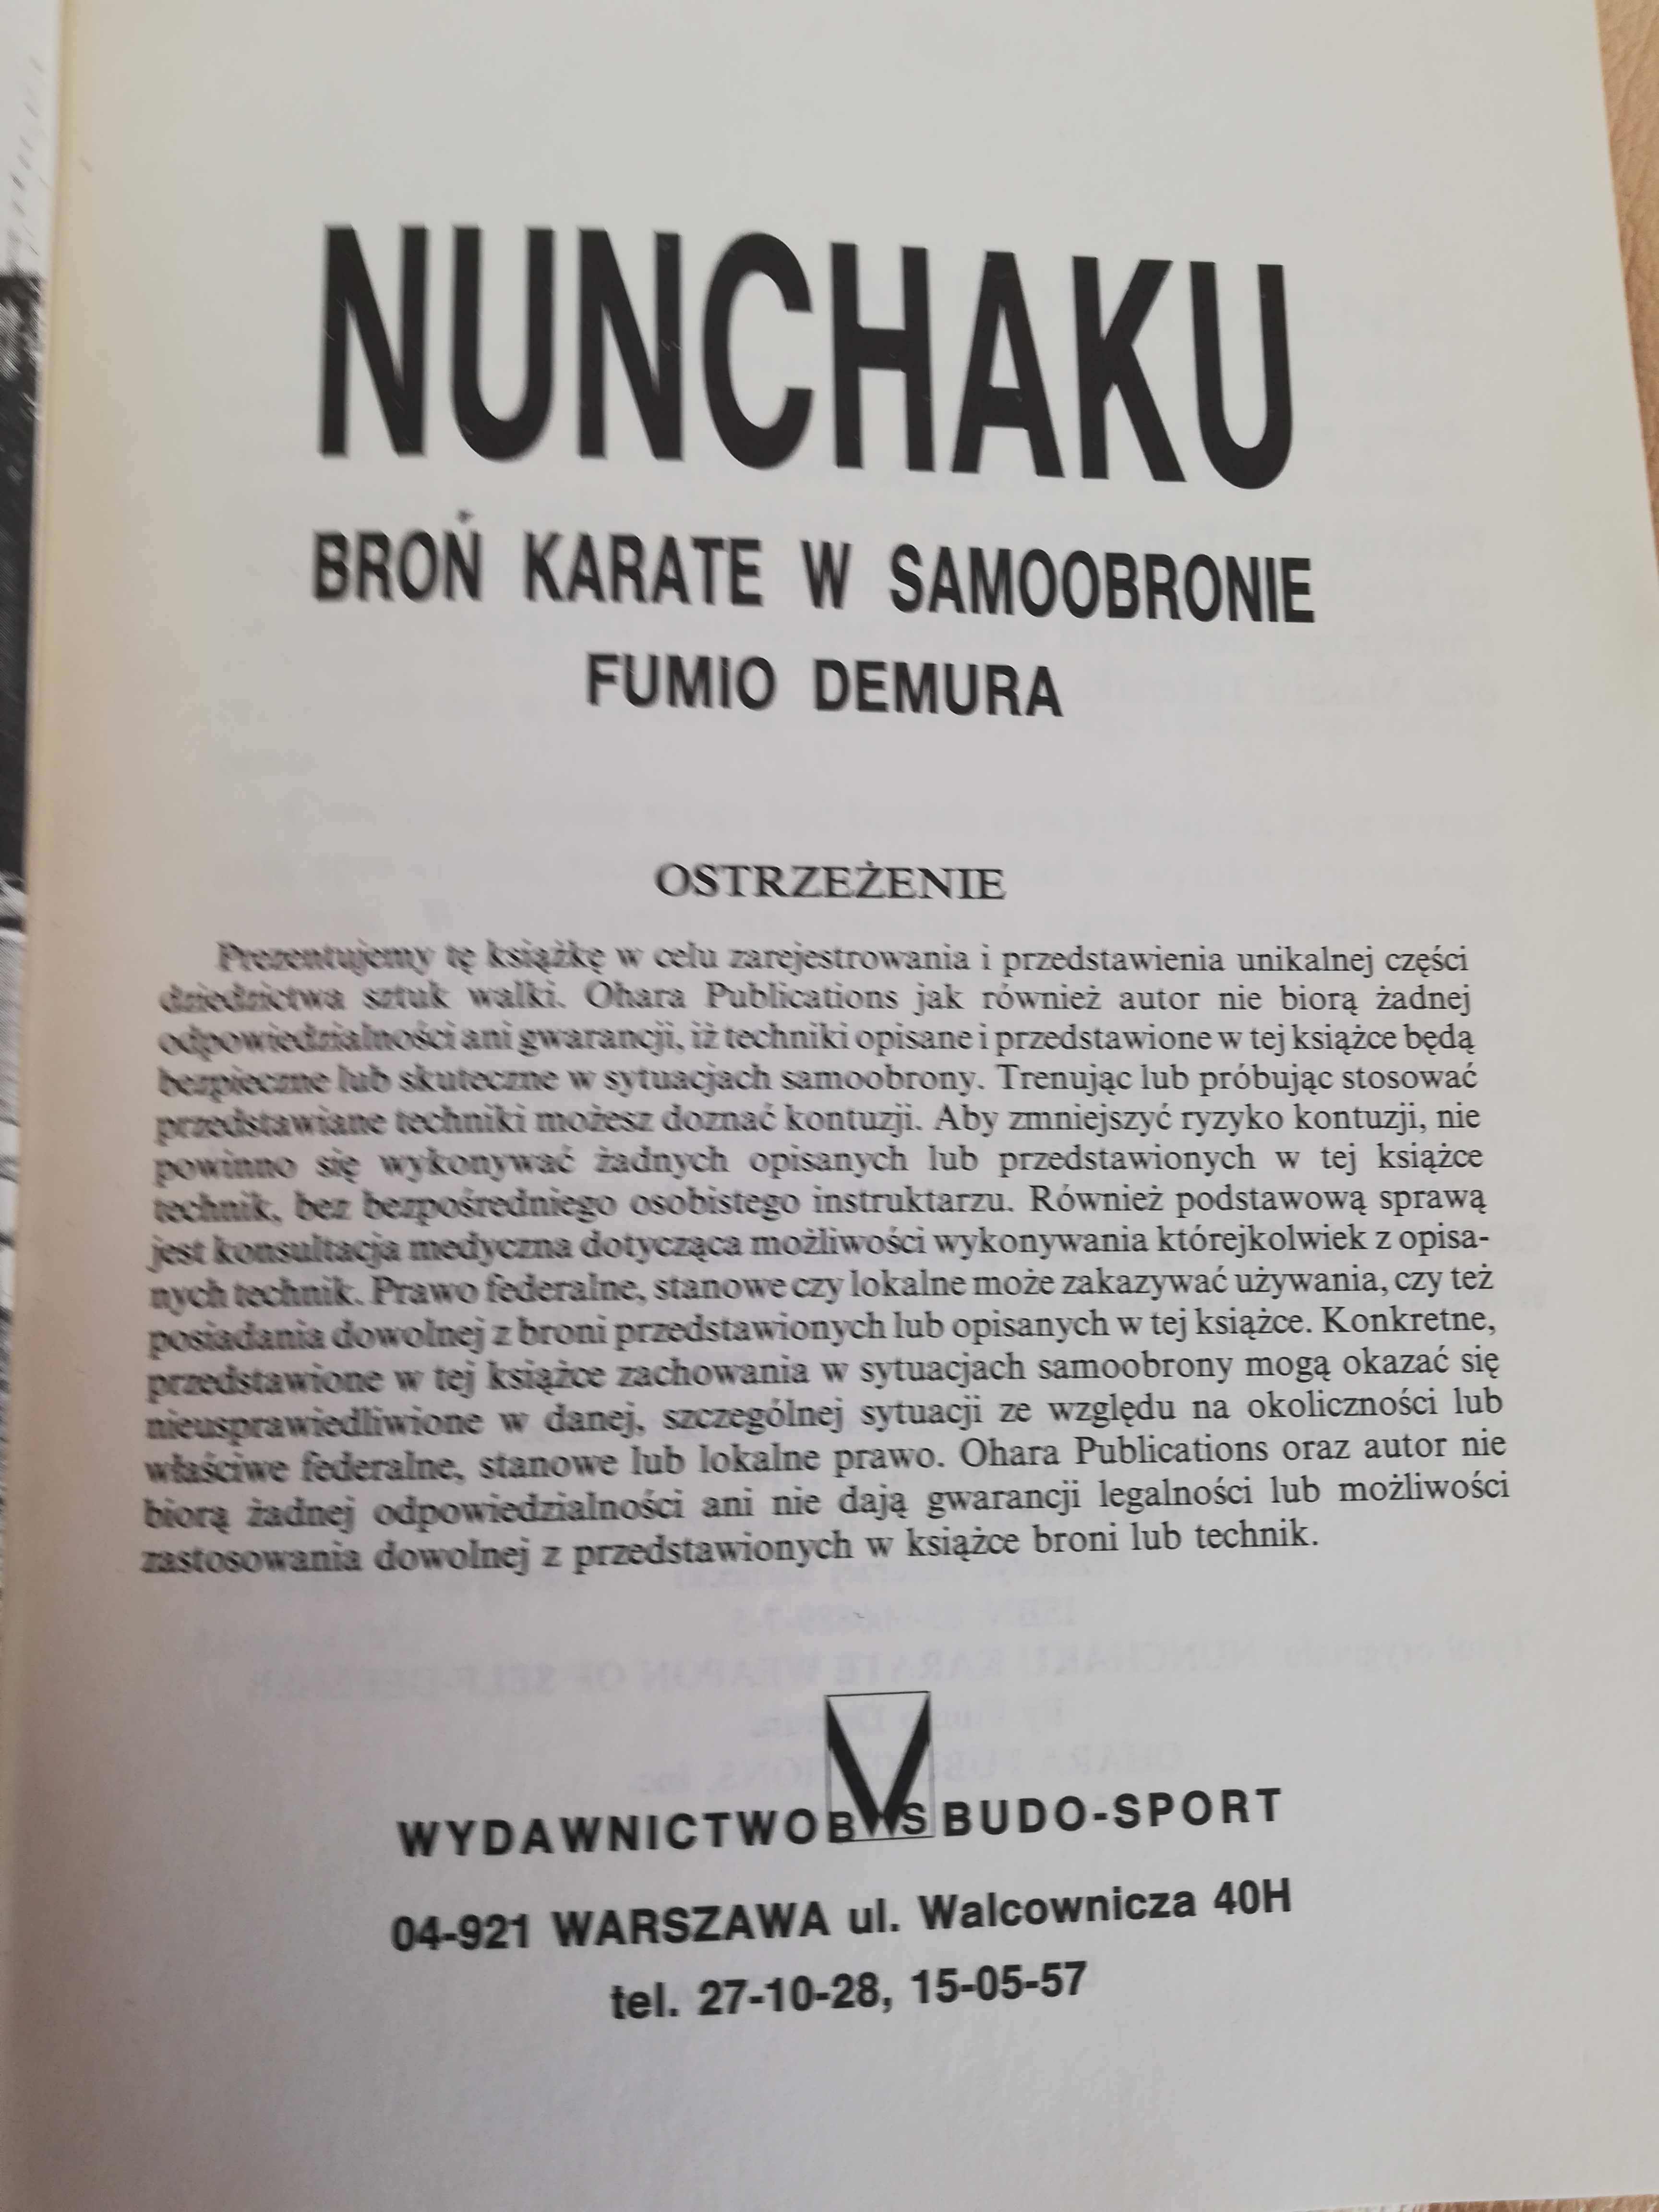 Nunchaku - broń karate w samoobronie - Fumio Demura cz.1